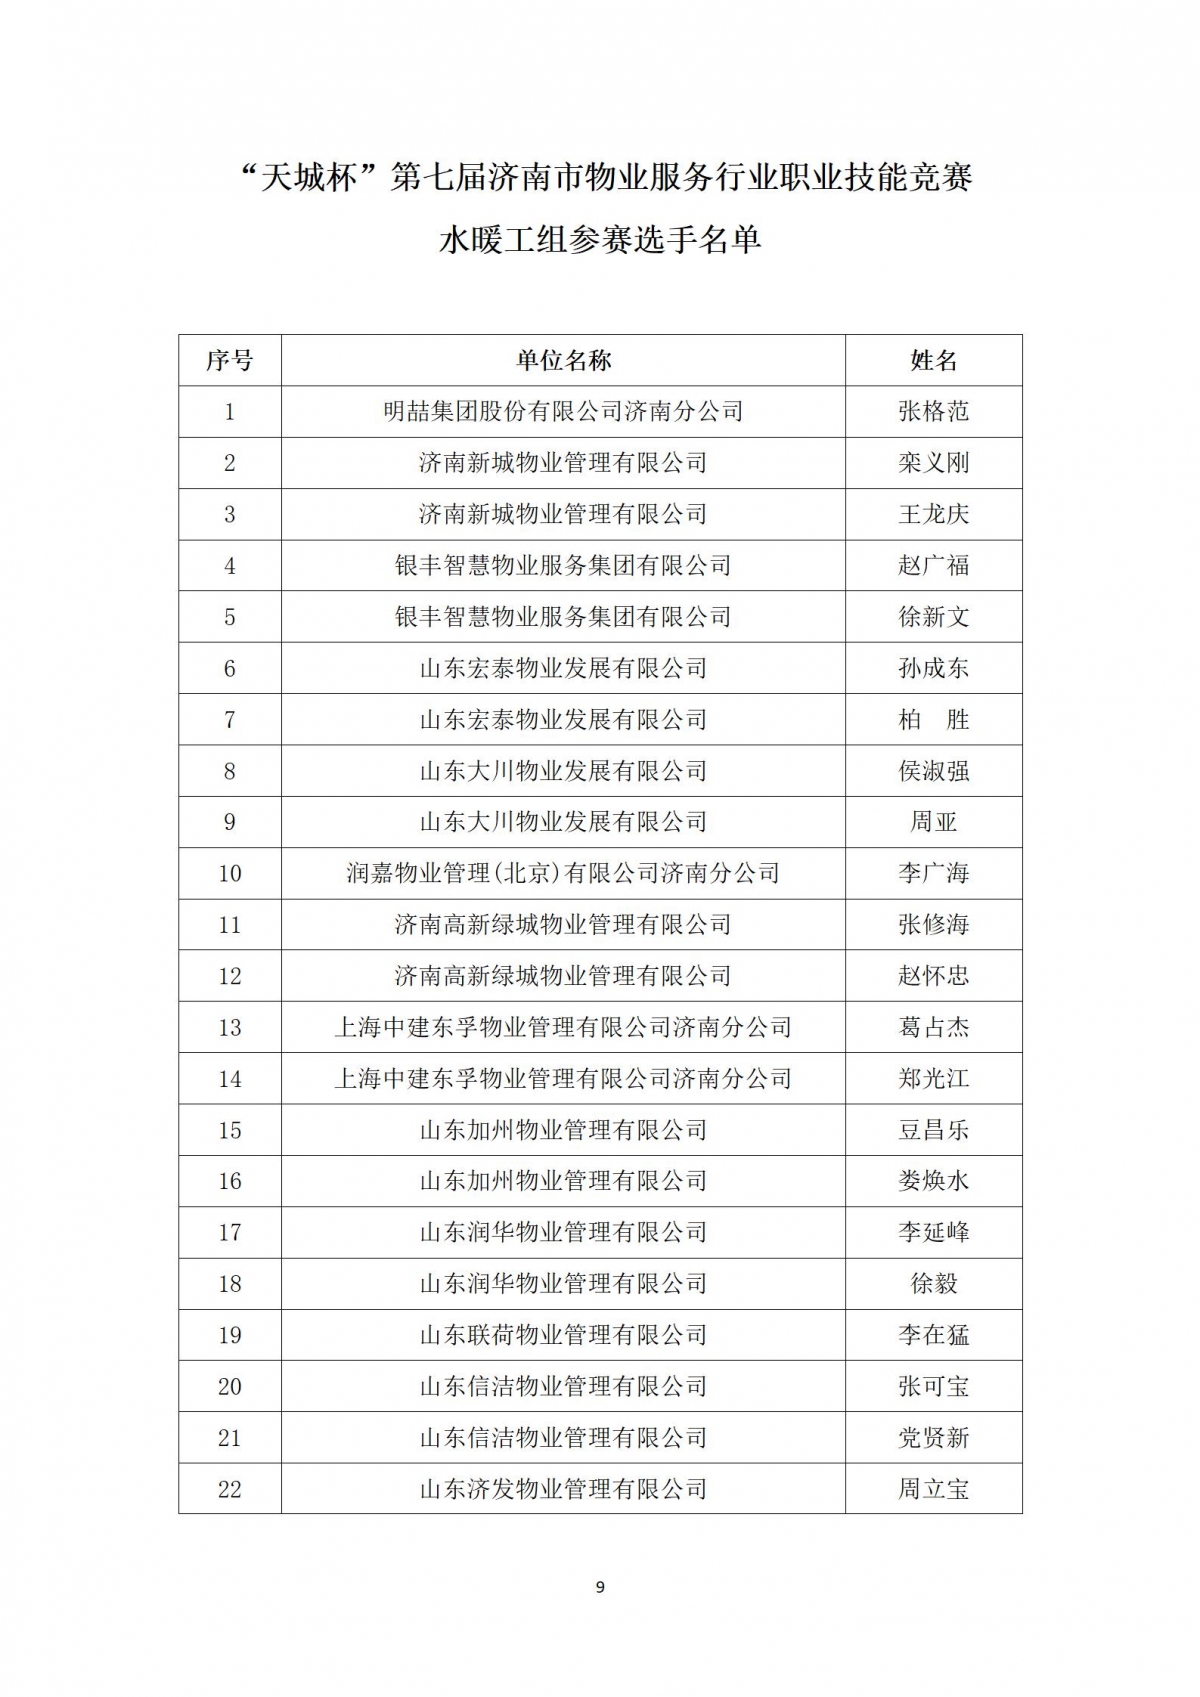 关于“天城杯”第七届济南市物业服务行业职业技能竞赛选手名单的公示_09